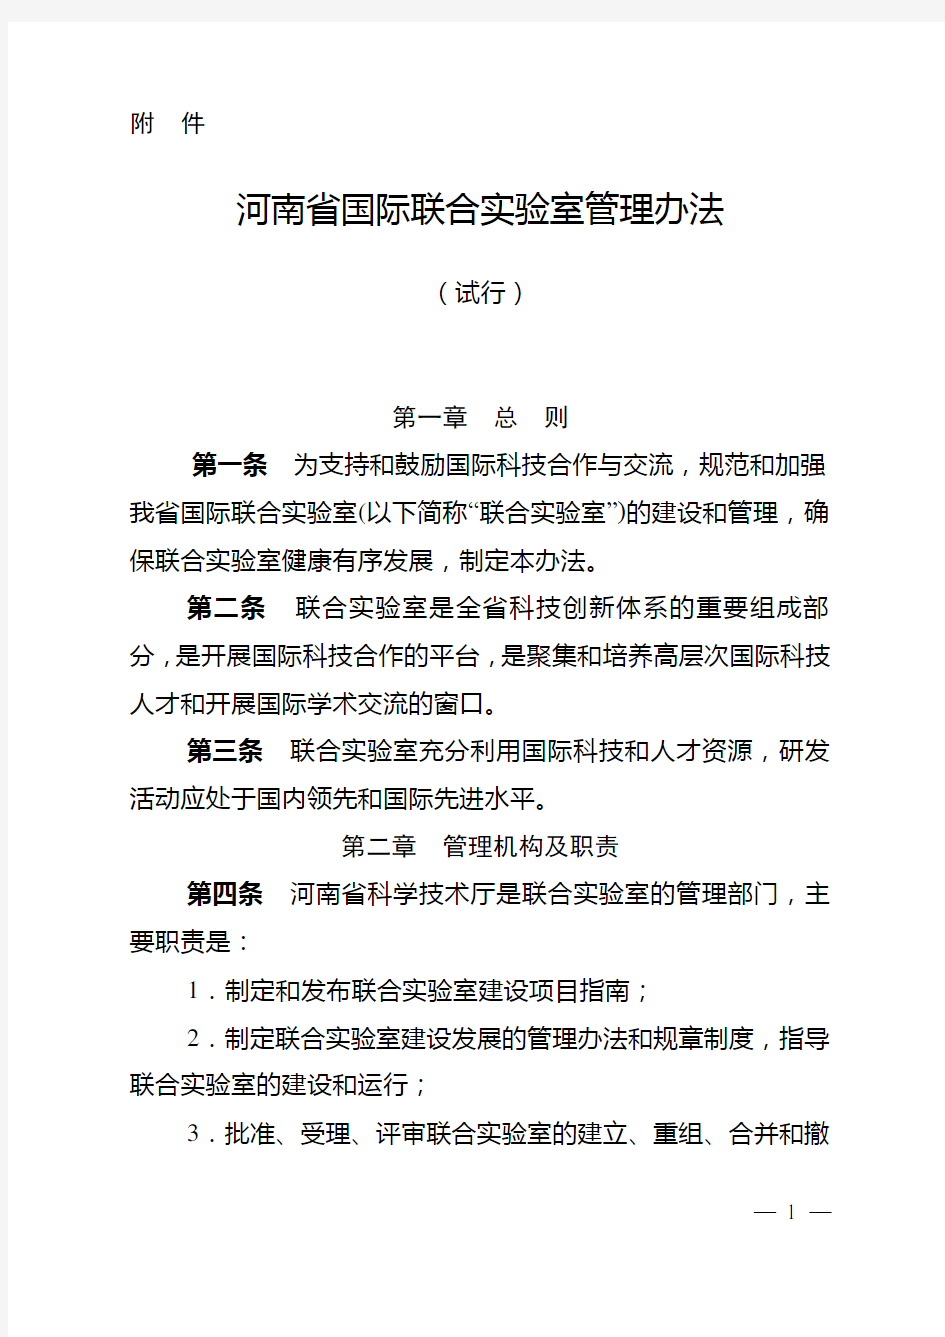 河南省国际联合实验室管理办法(试行)